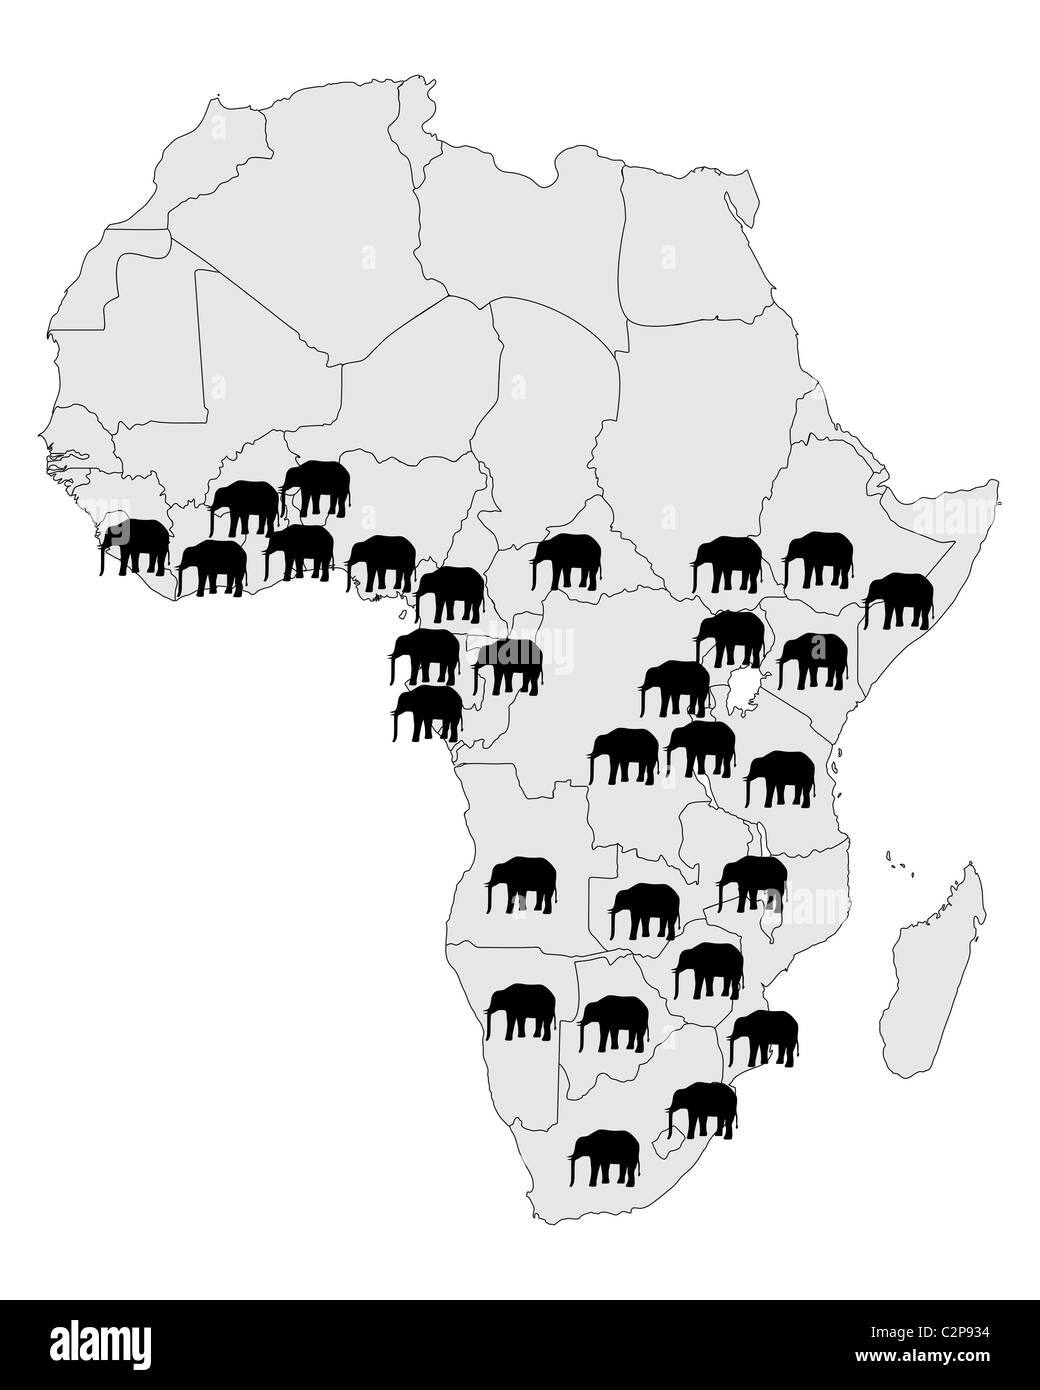 African Elephant Range C2P934 